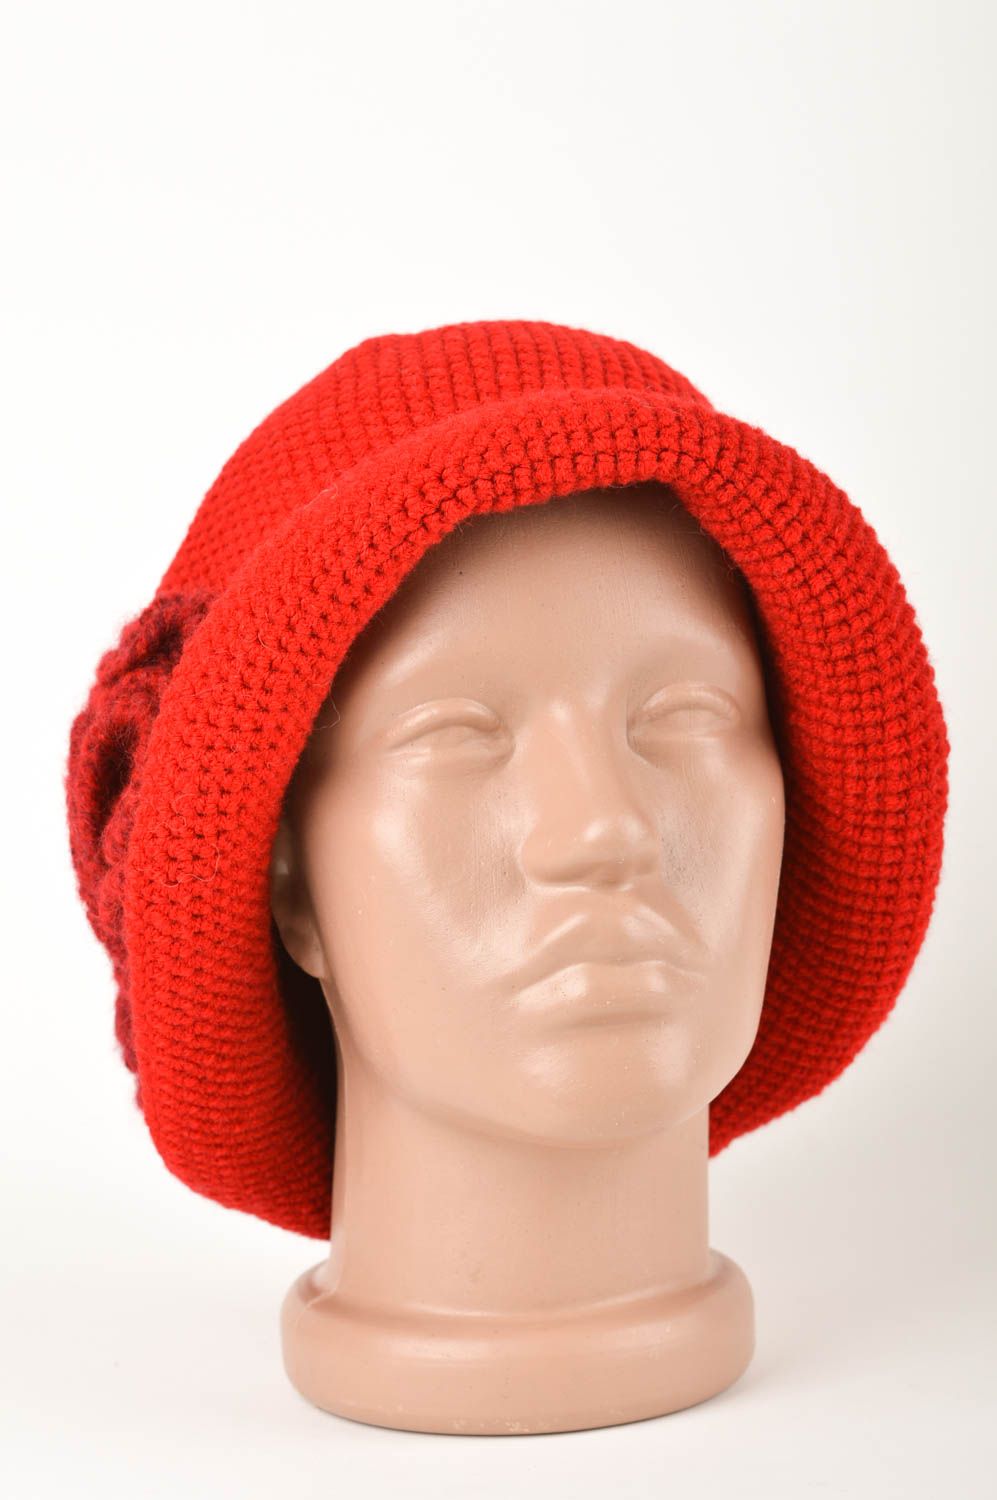 Cappello a uncinetto fatto a mano in lana splendido accessorio invernale  foto 1